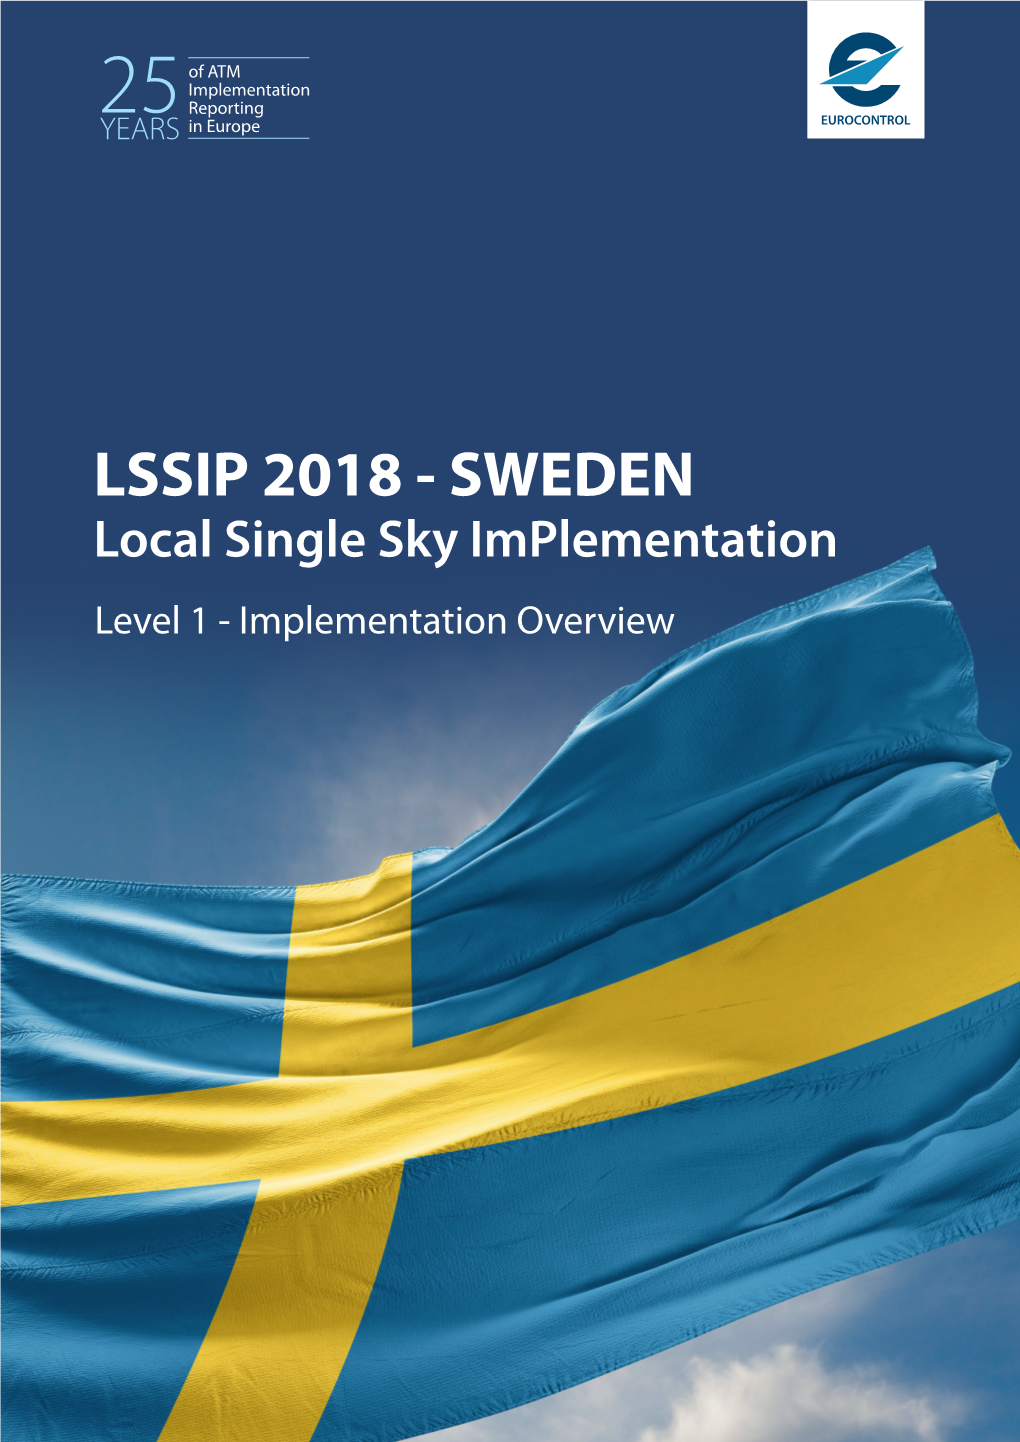 LSSIP 2018 - SWEDEN Local Single Sky Implementation Level 1 - Implementation Overview